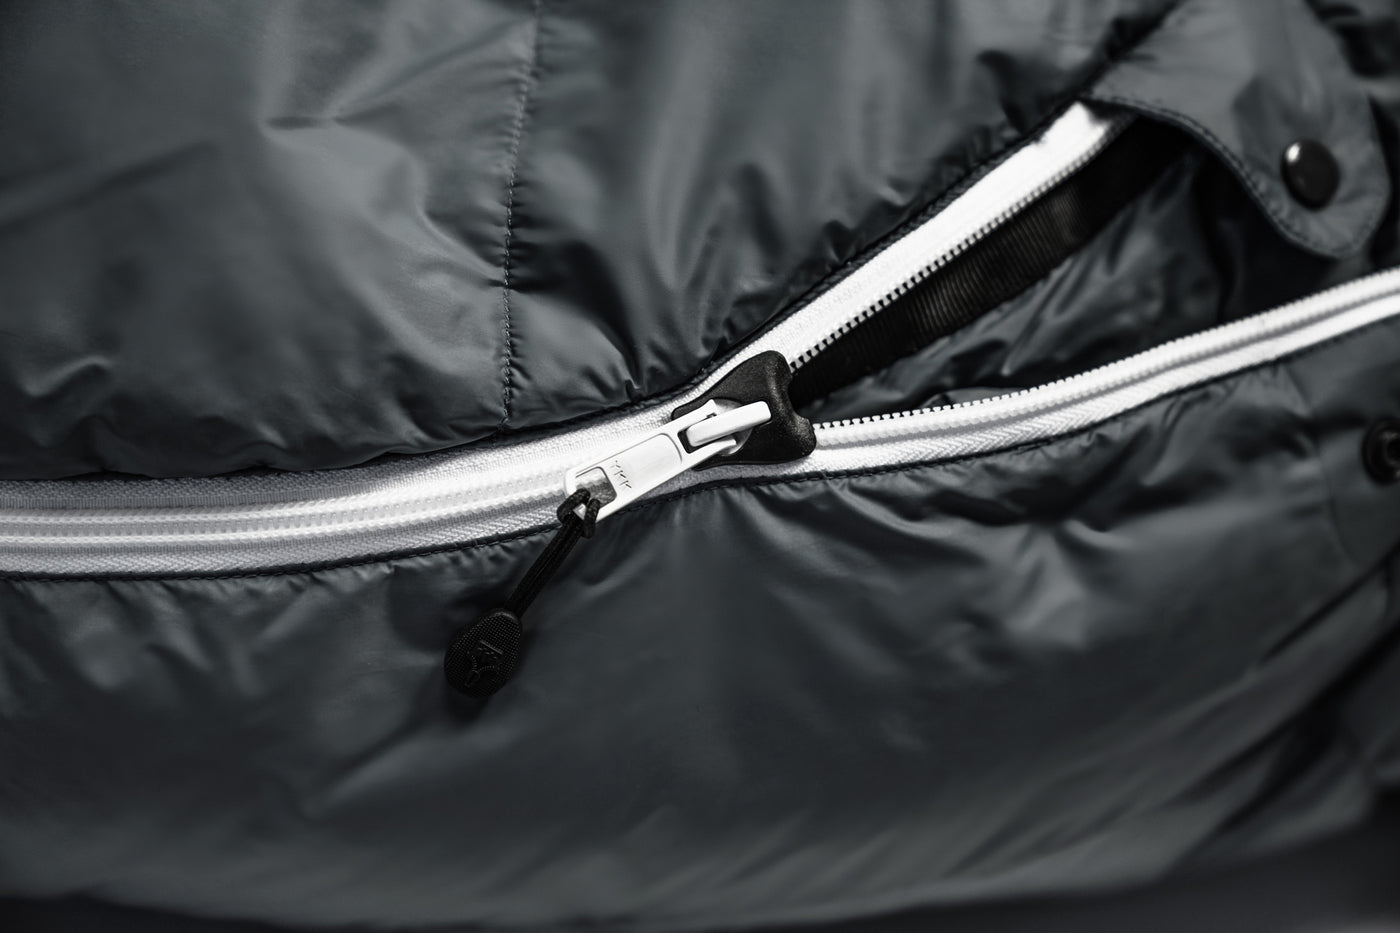 Grüezi bag Biopod Down Hybrid Ice Extreme 180 neuer Zipper der einzwicken verhindert